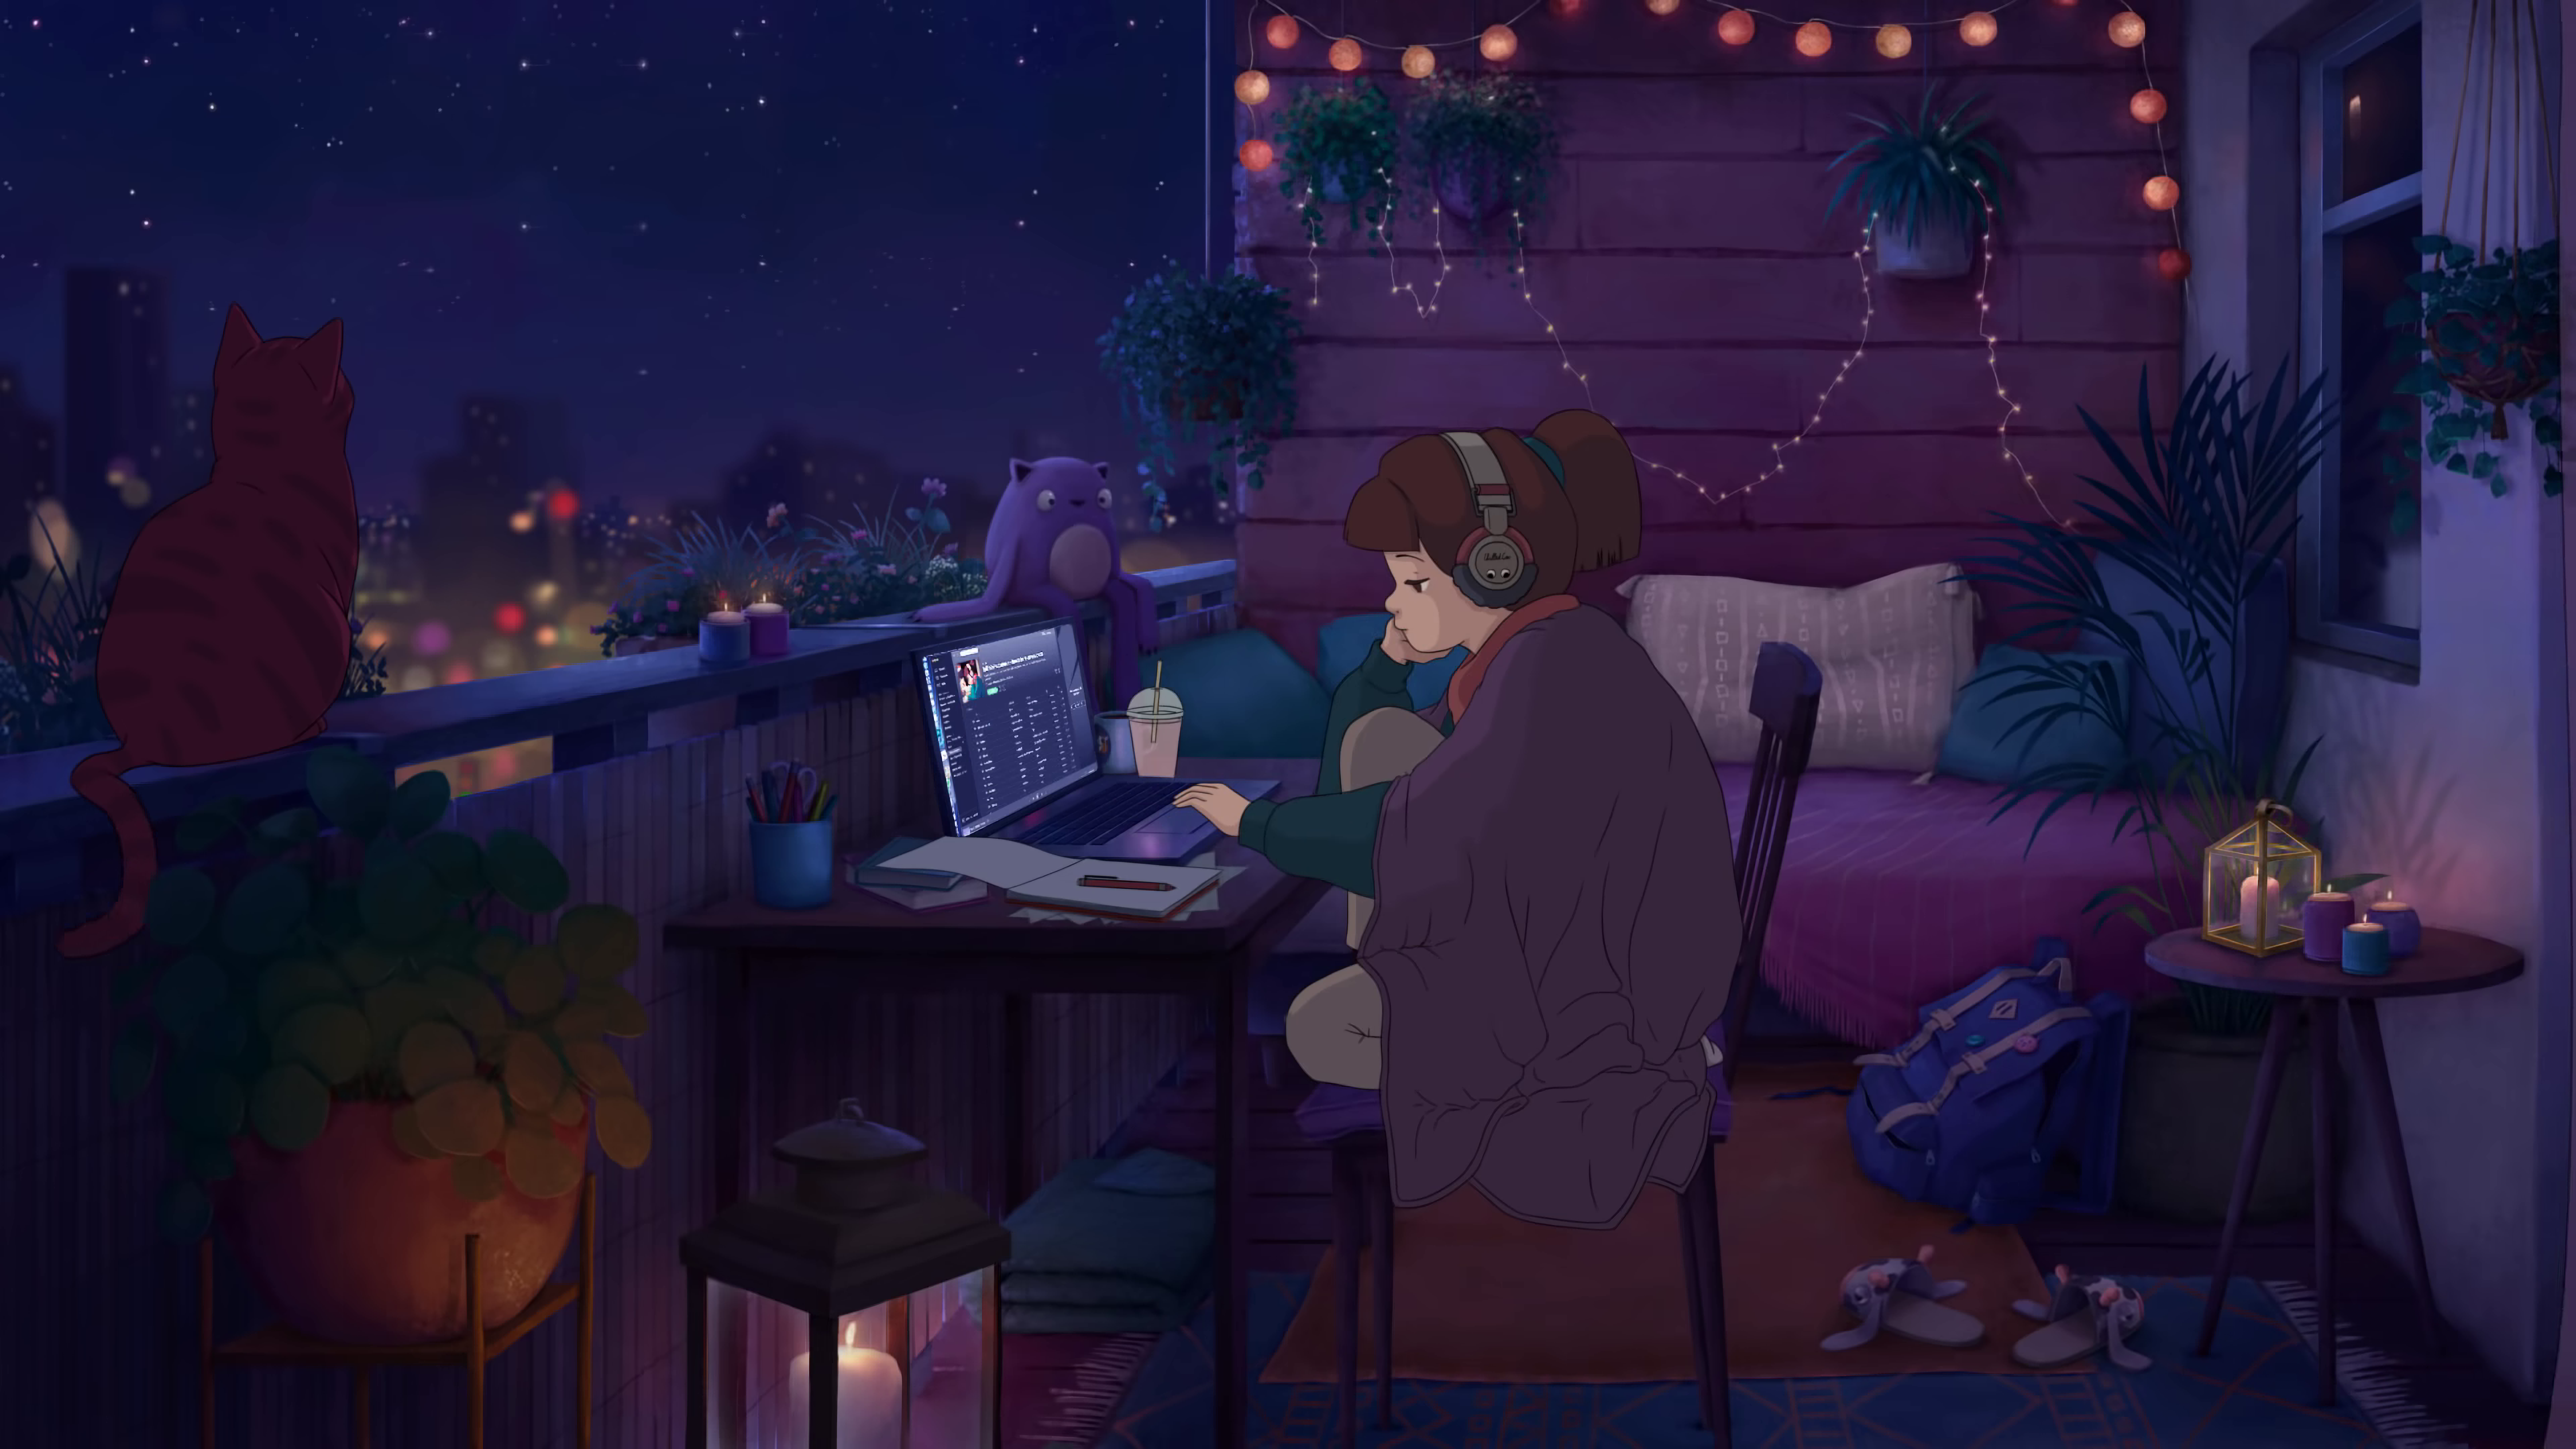 Studying girl ai resized x studying girl desktop wallpaper art anime scenery wallpaper